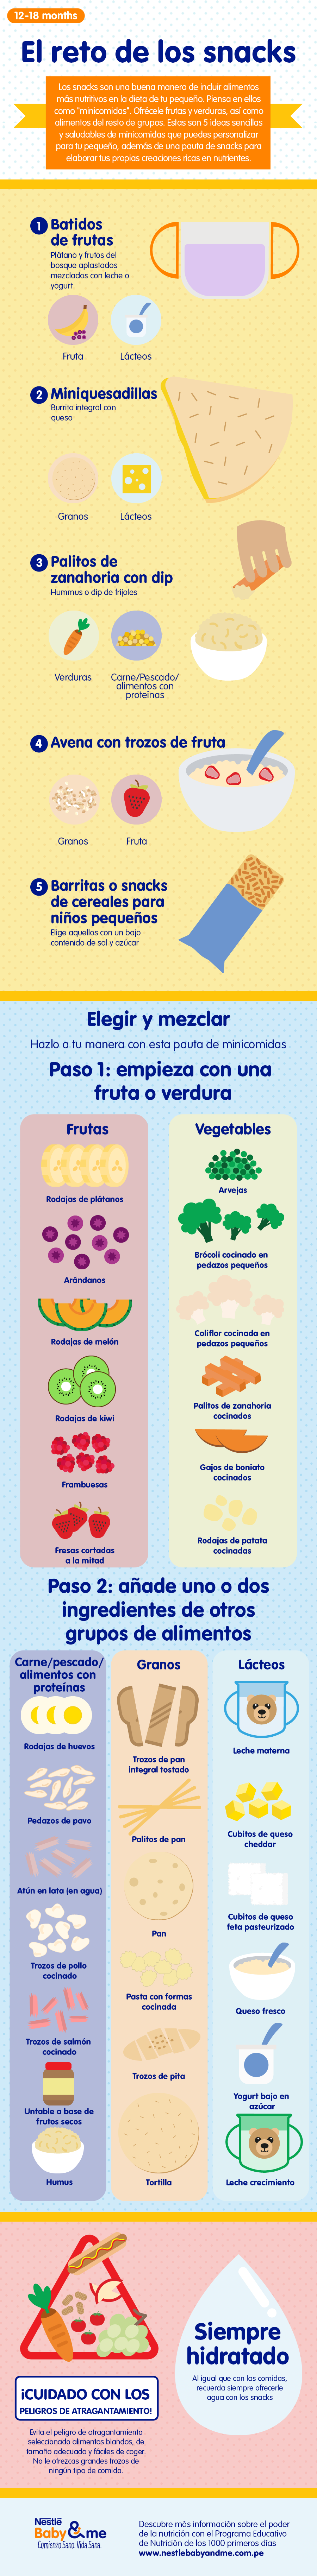 Infografía de snacks para niños
